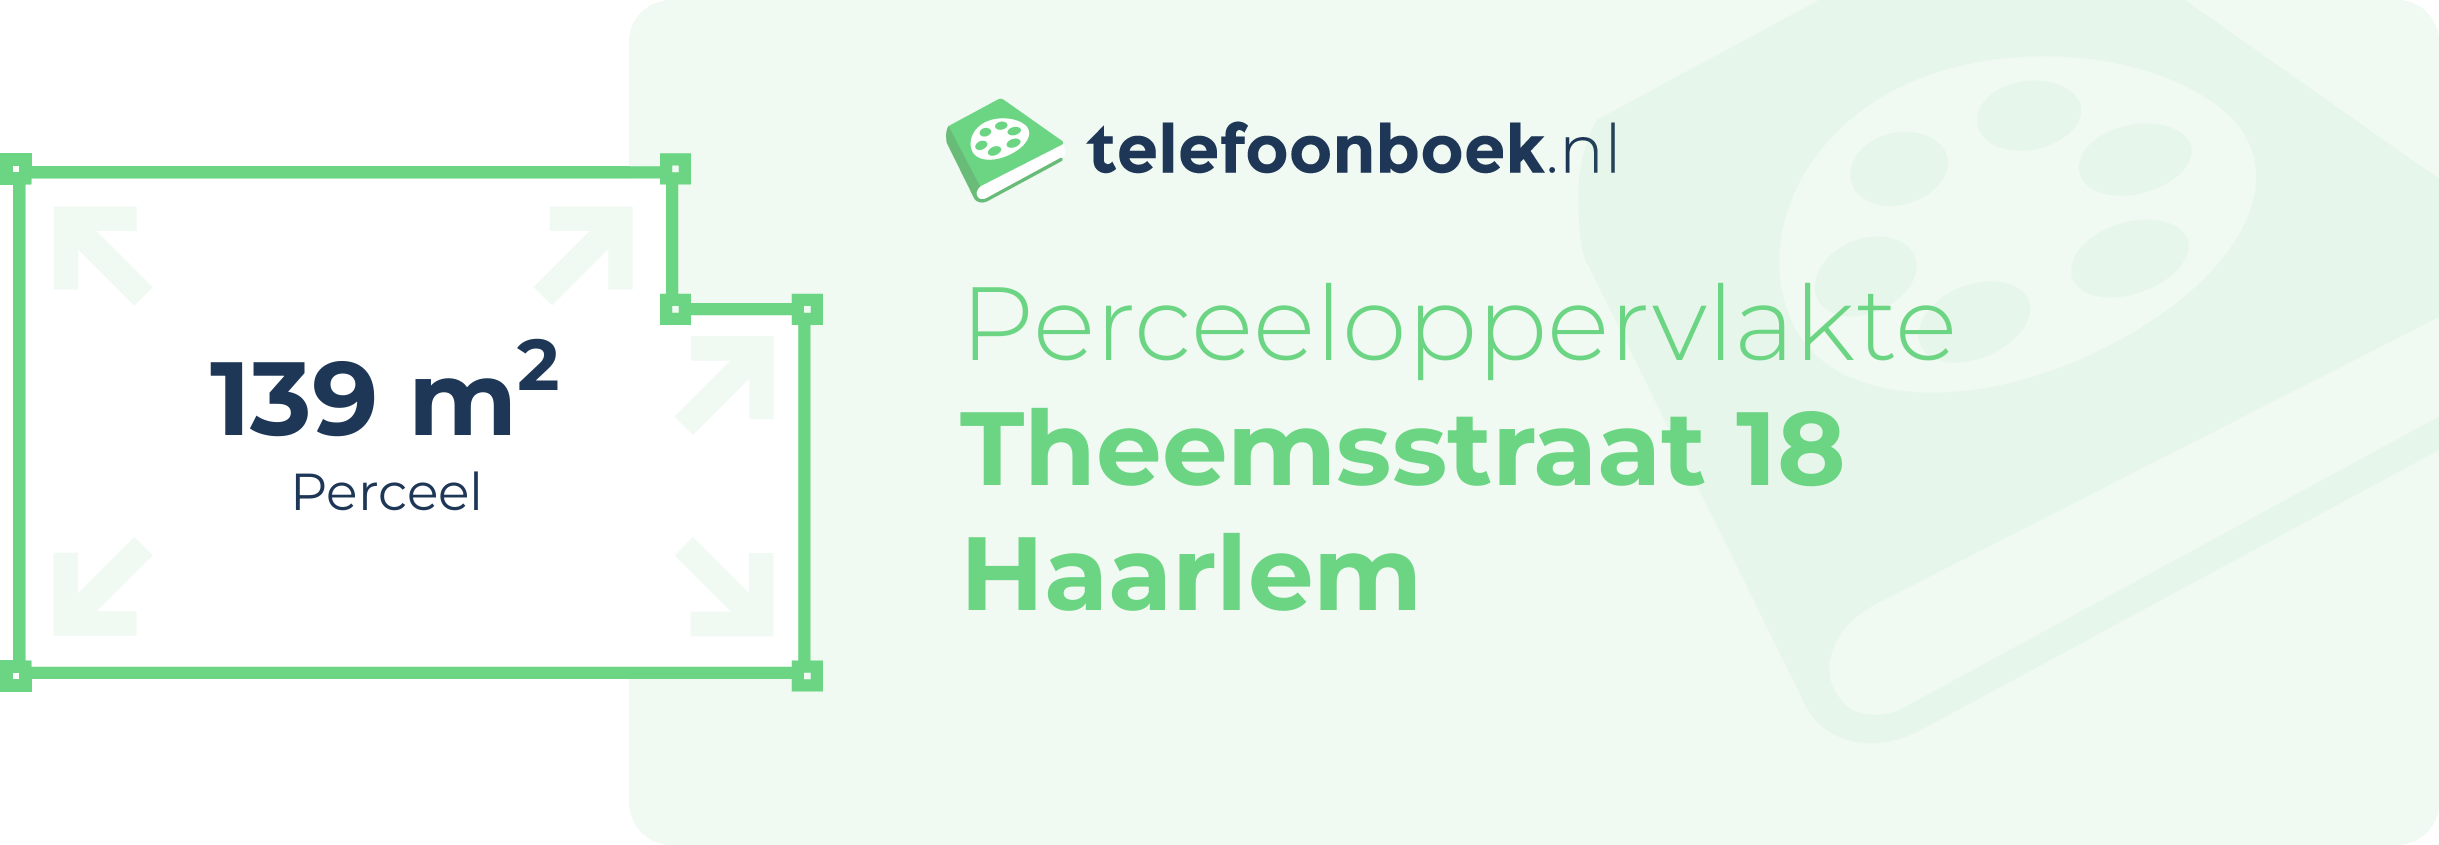 Perceeloppervlakte Theemsstraat 18 Haarlem